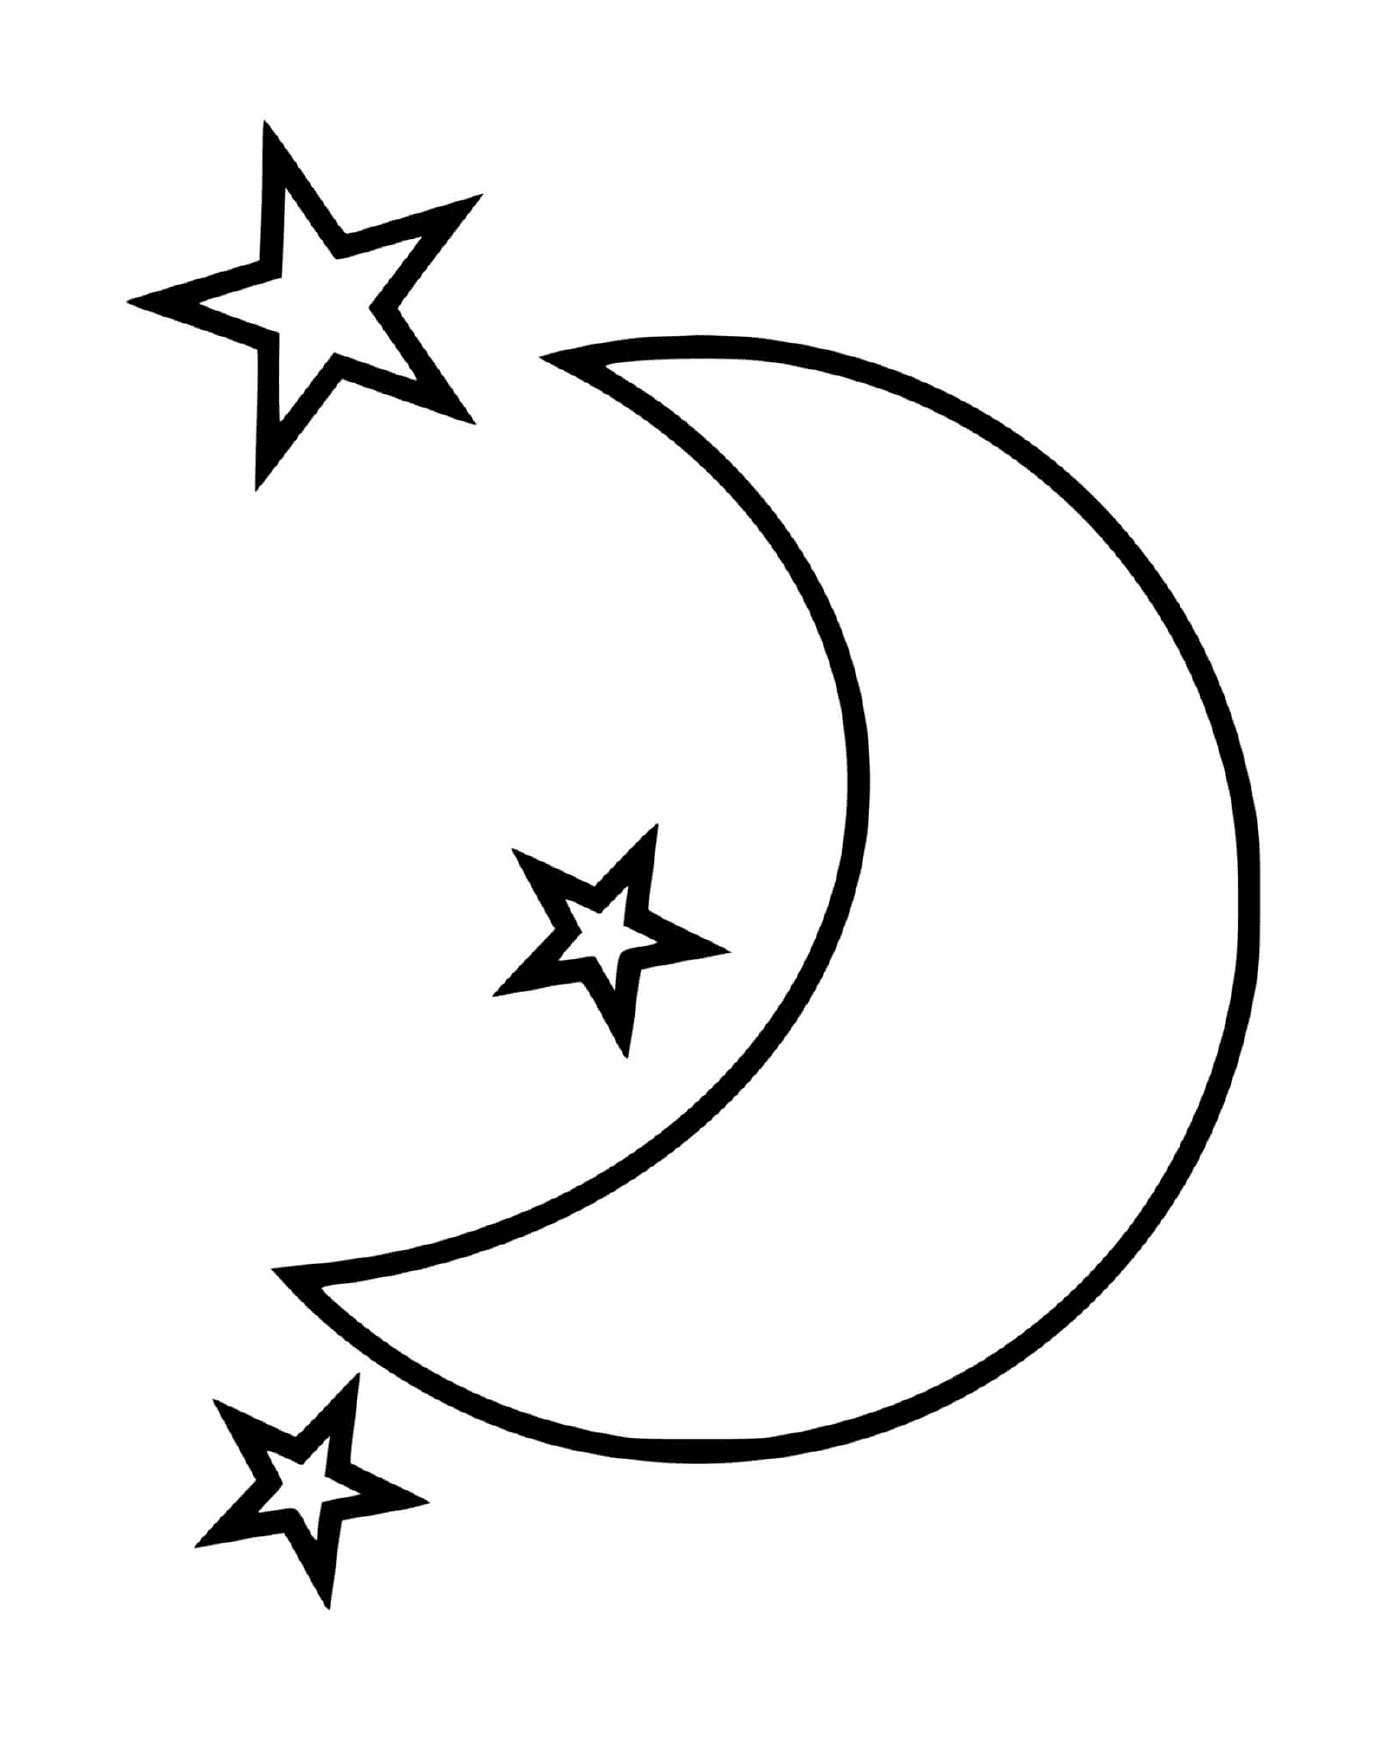  Лунный полумесяц с тремя звездами 